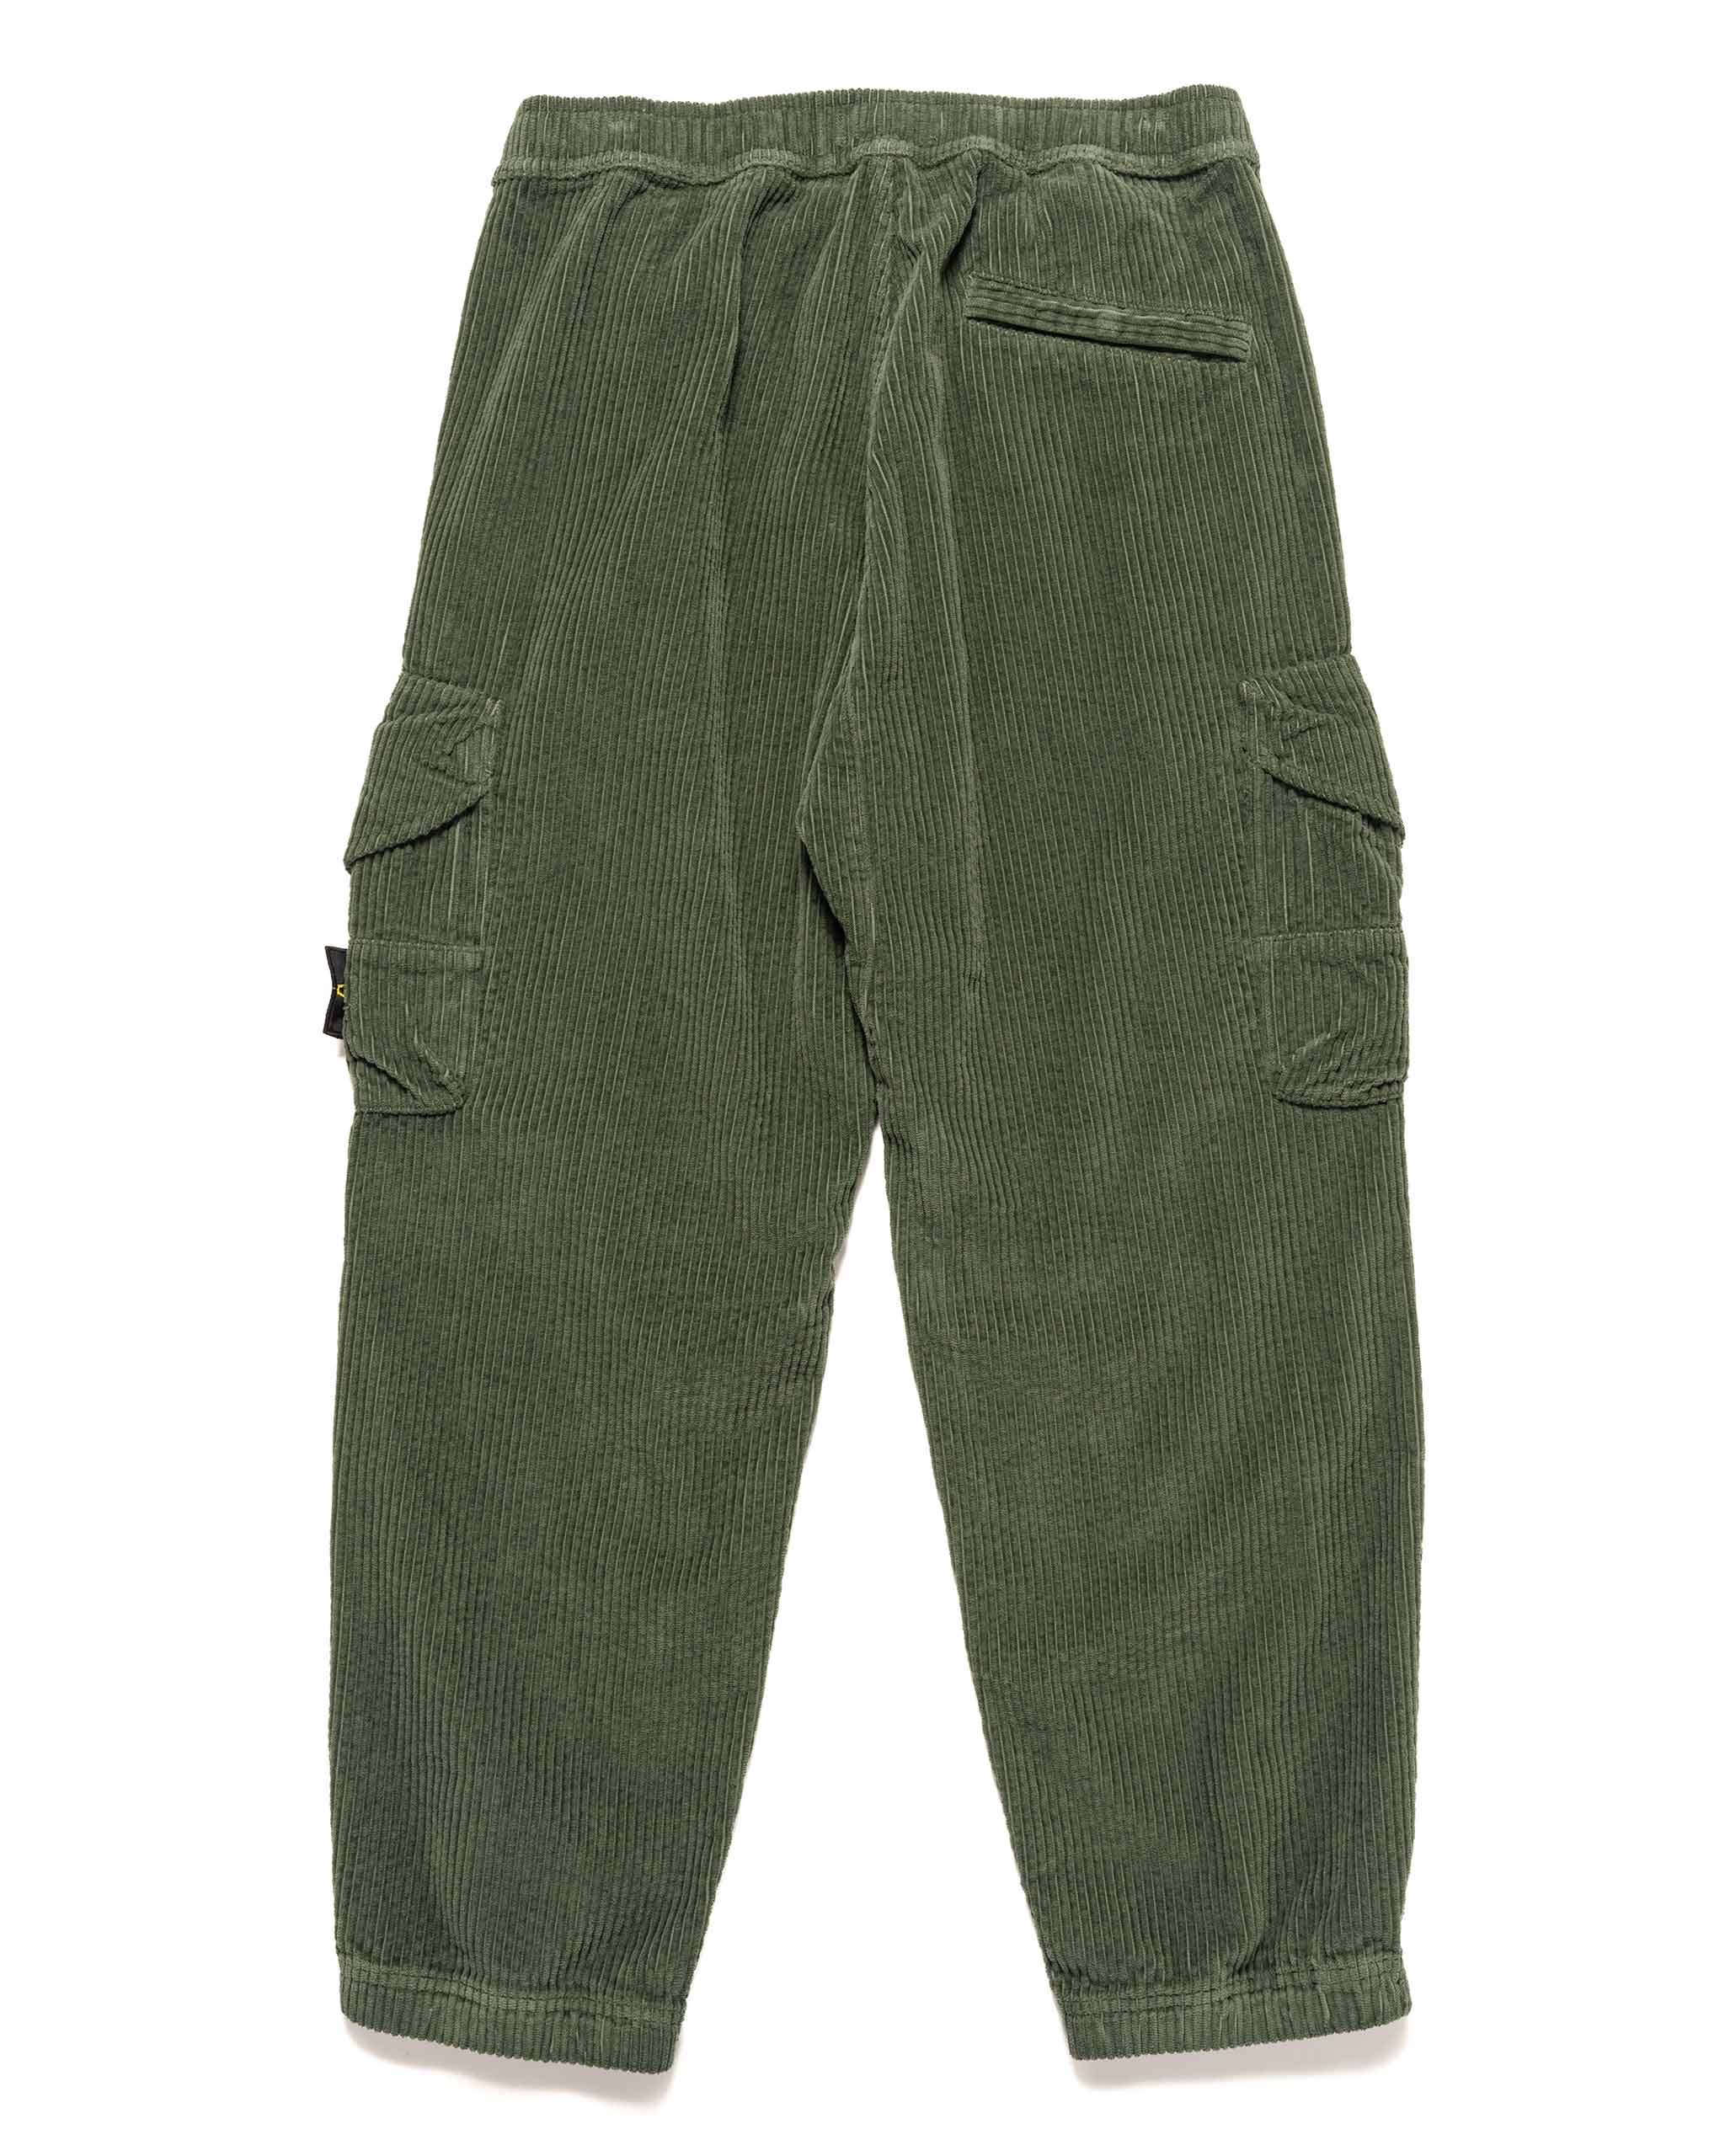 Corduroy 400 Garment Dyed 2 Pocket Cargo Pant Sage